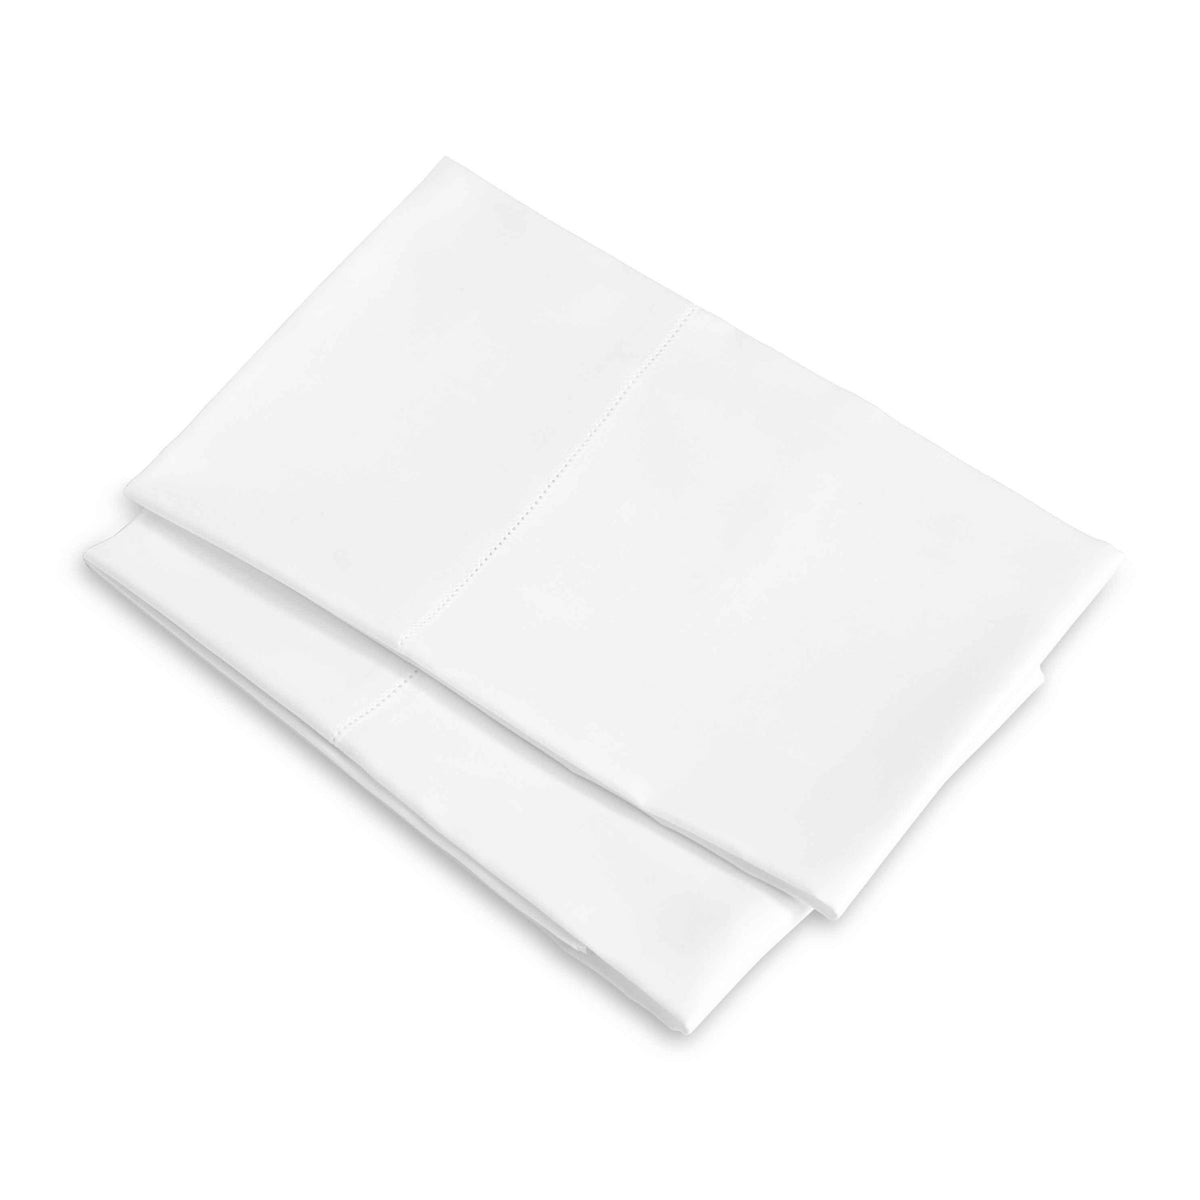 Clear Image of Signoria Raffaello Pillowcases in White Color